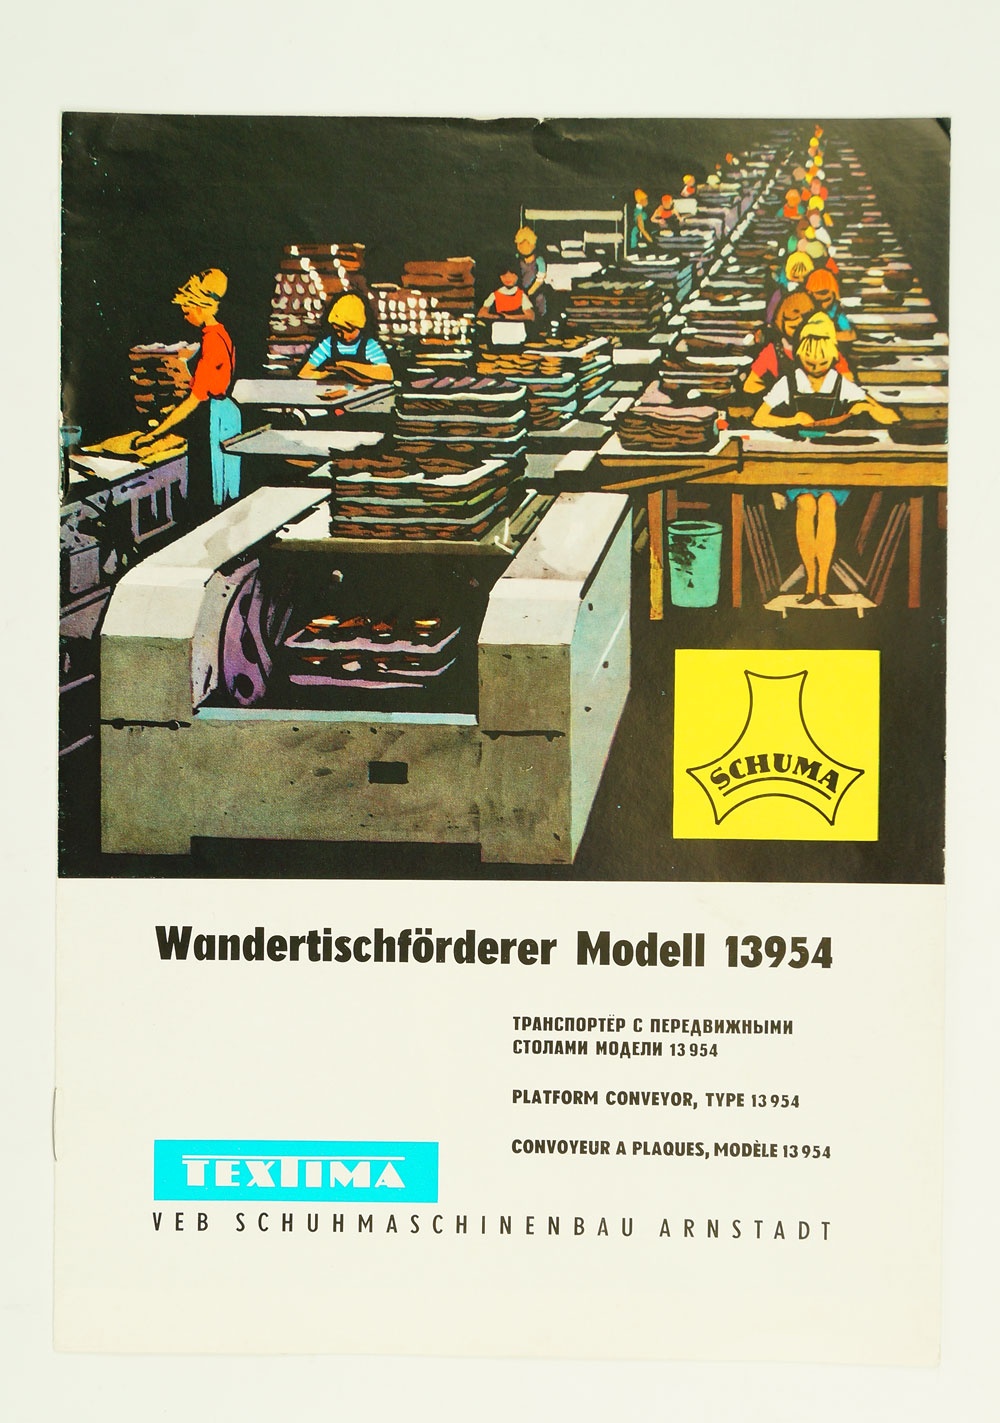 Prospekt für Wandertischförderer Modell 13954, 1966 (Museum Weißenfels - Schloss Neu-Augustusburg CC BY-NC-SA)